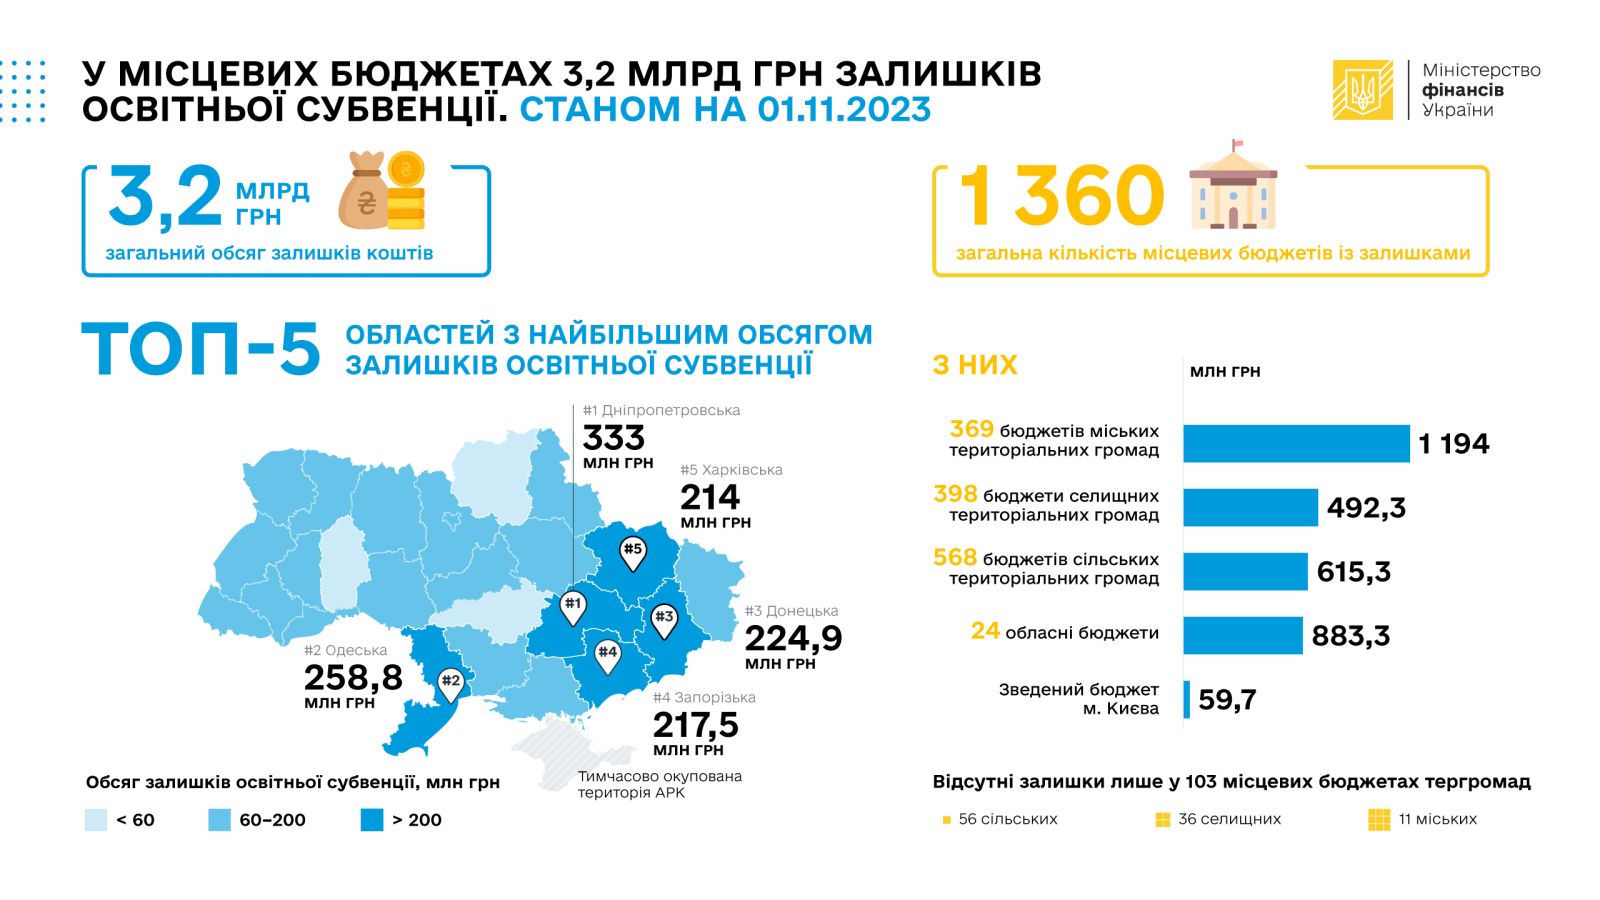 Накопичення освітньої субвенції в місцевих бюджетах України. Інфографіка: Мінфін